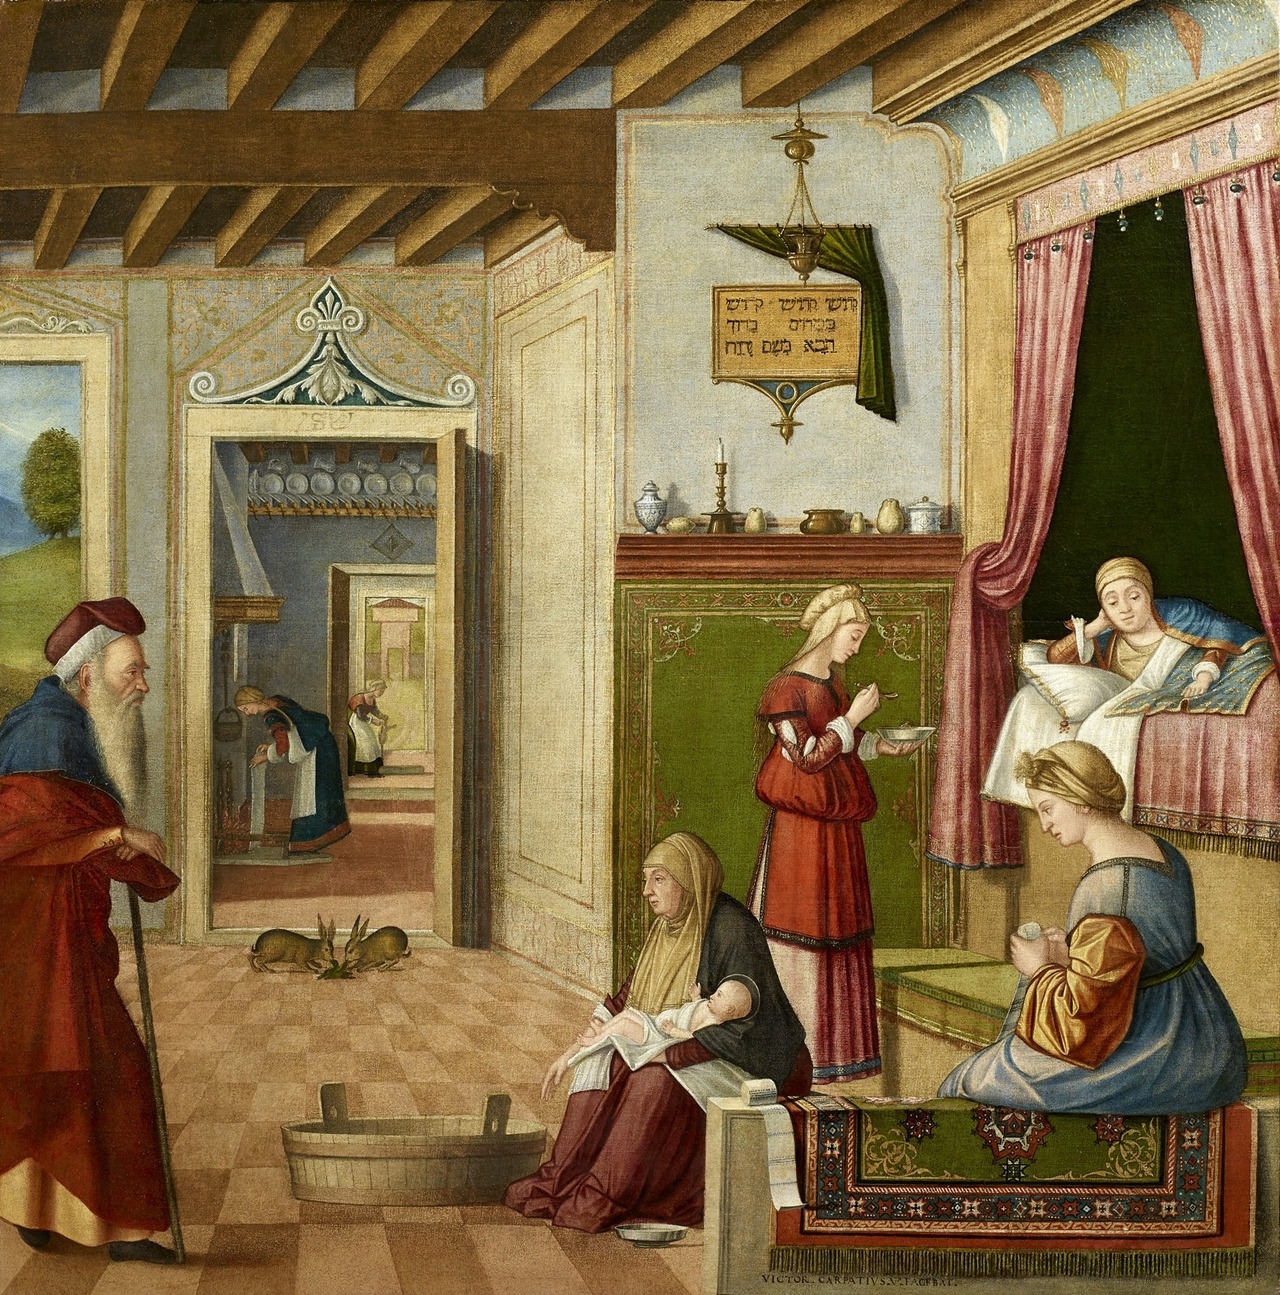 Vittore Carpaccio (Italian, ca. 1465-1525 / 26), Natività della Vergine (Nativity